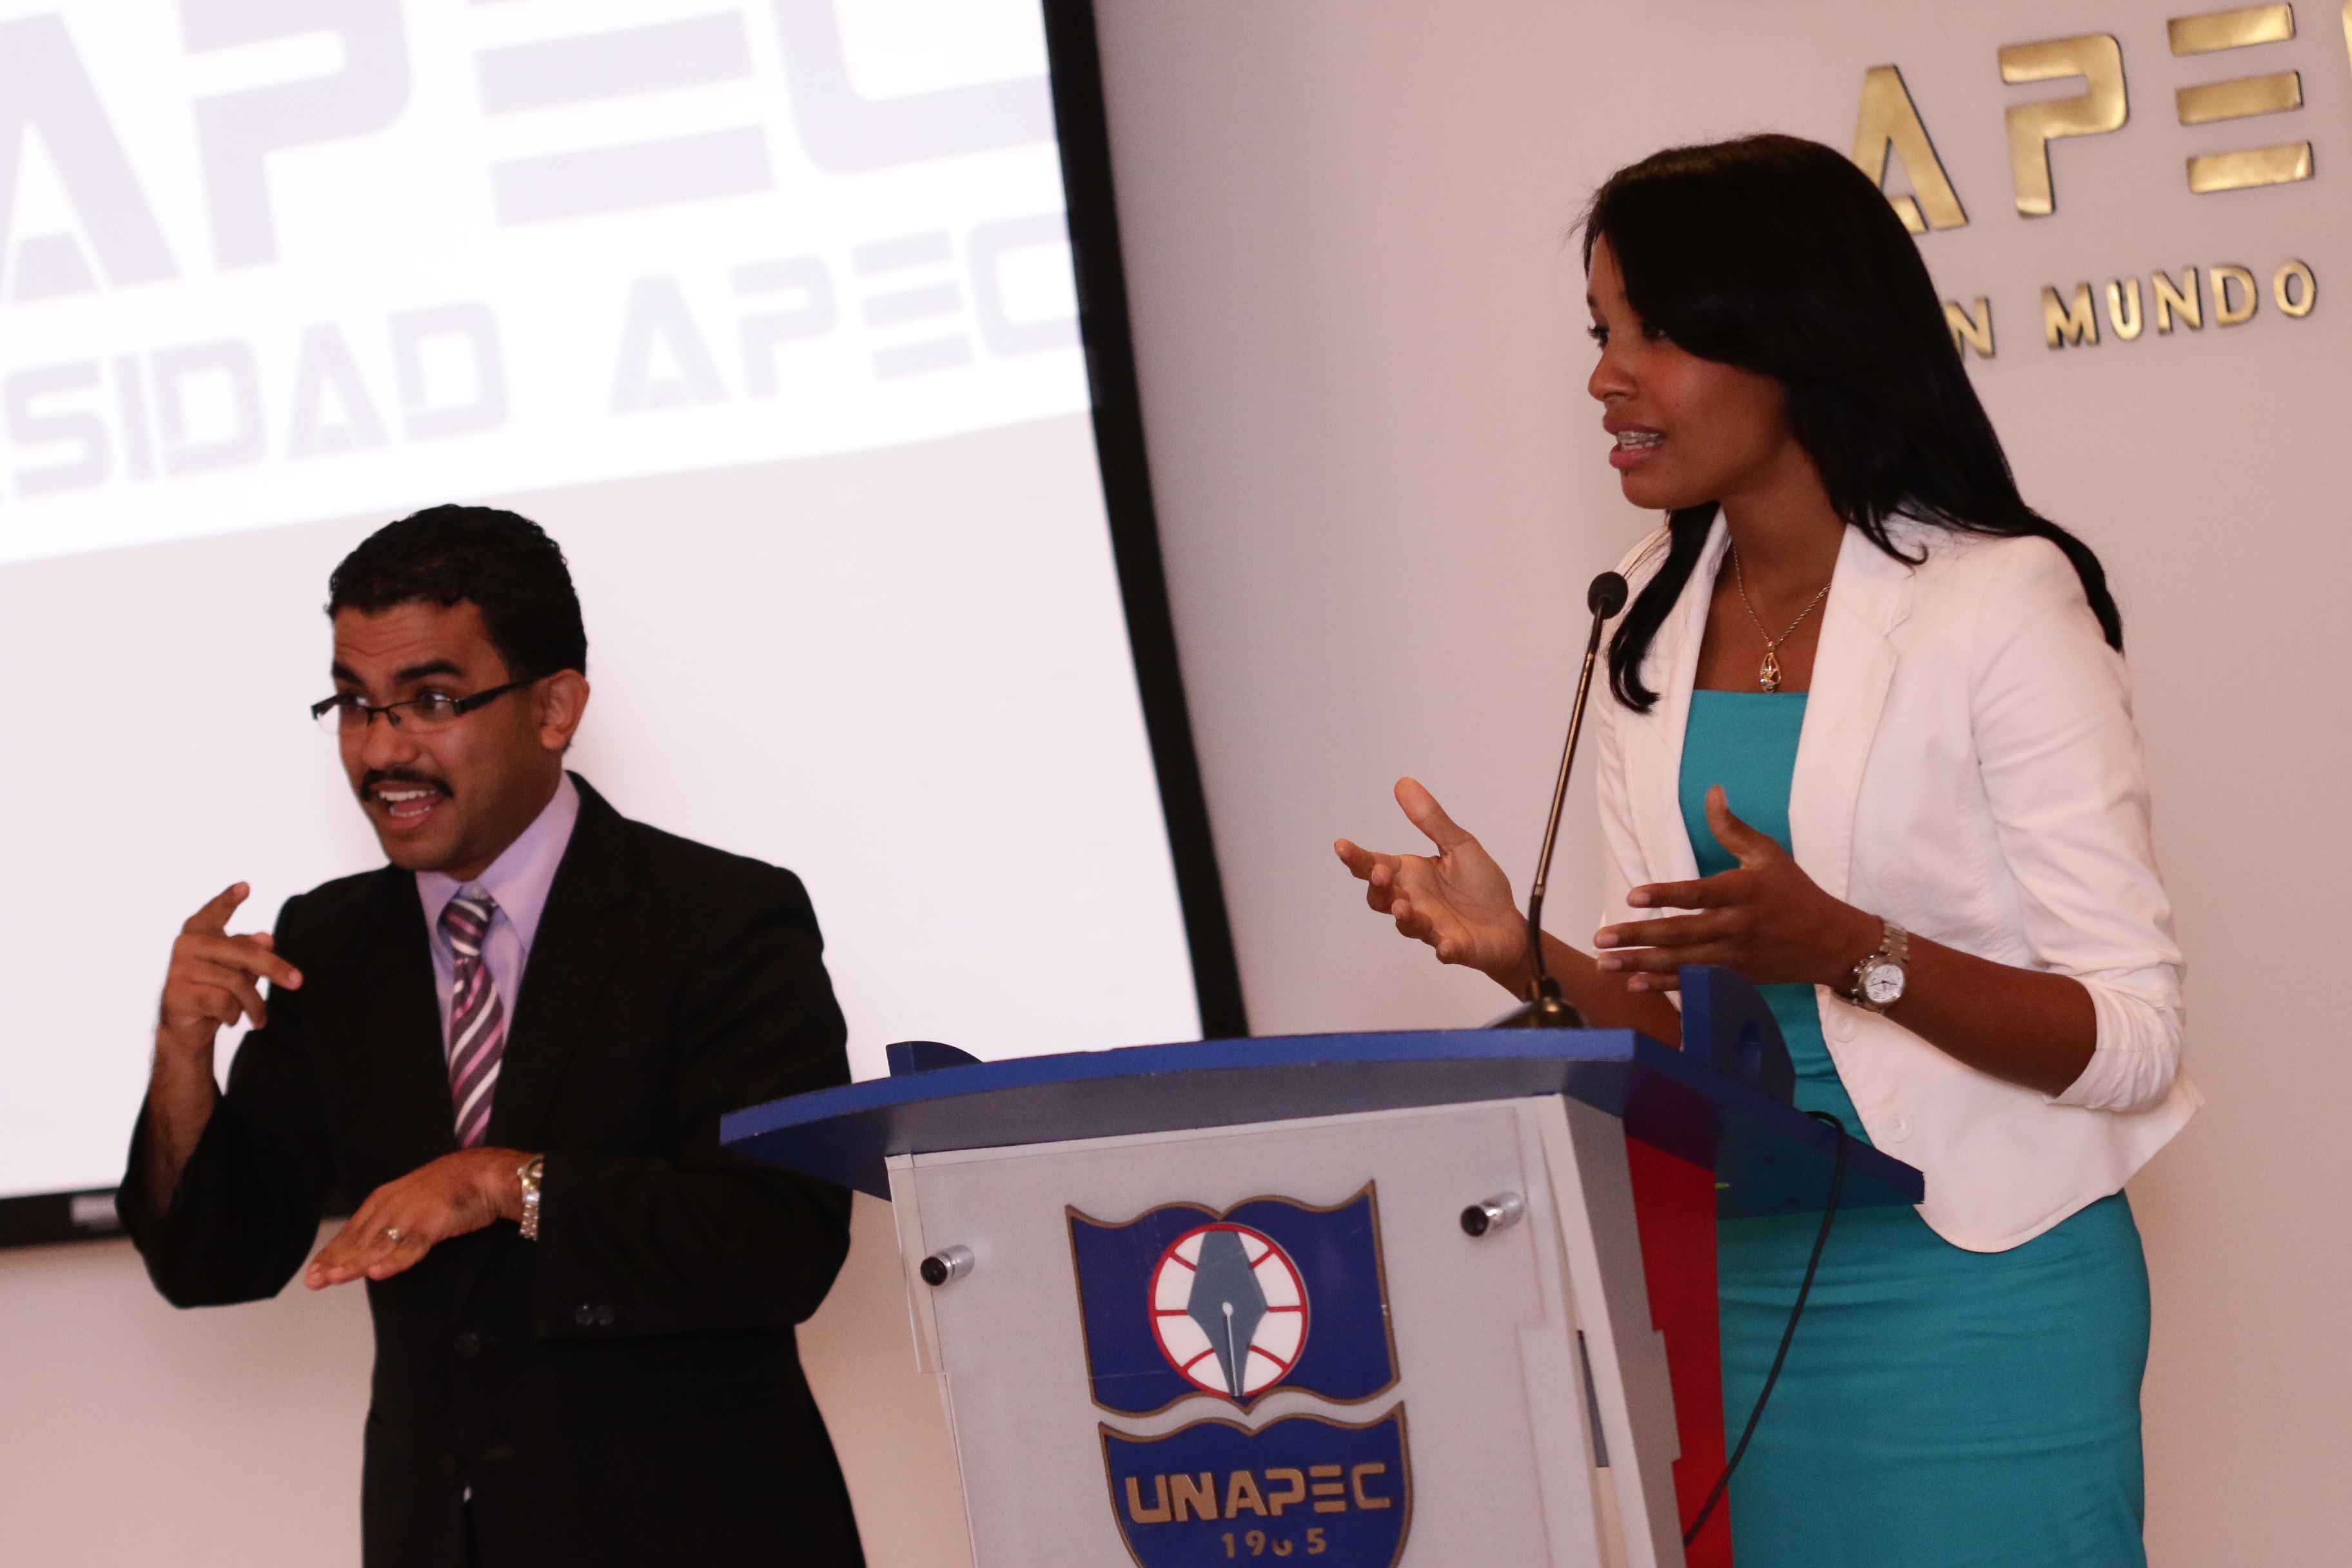 Diana de la Cruz, persona de la audiencia, expresa su agradecimiento a UNAPEC por el apoyo brindado a las personas sordas.